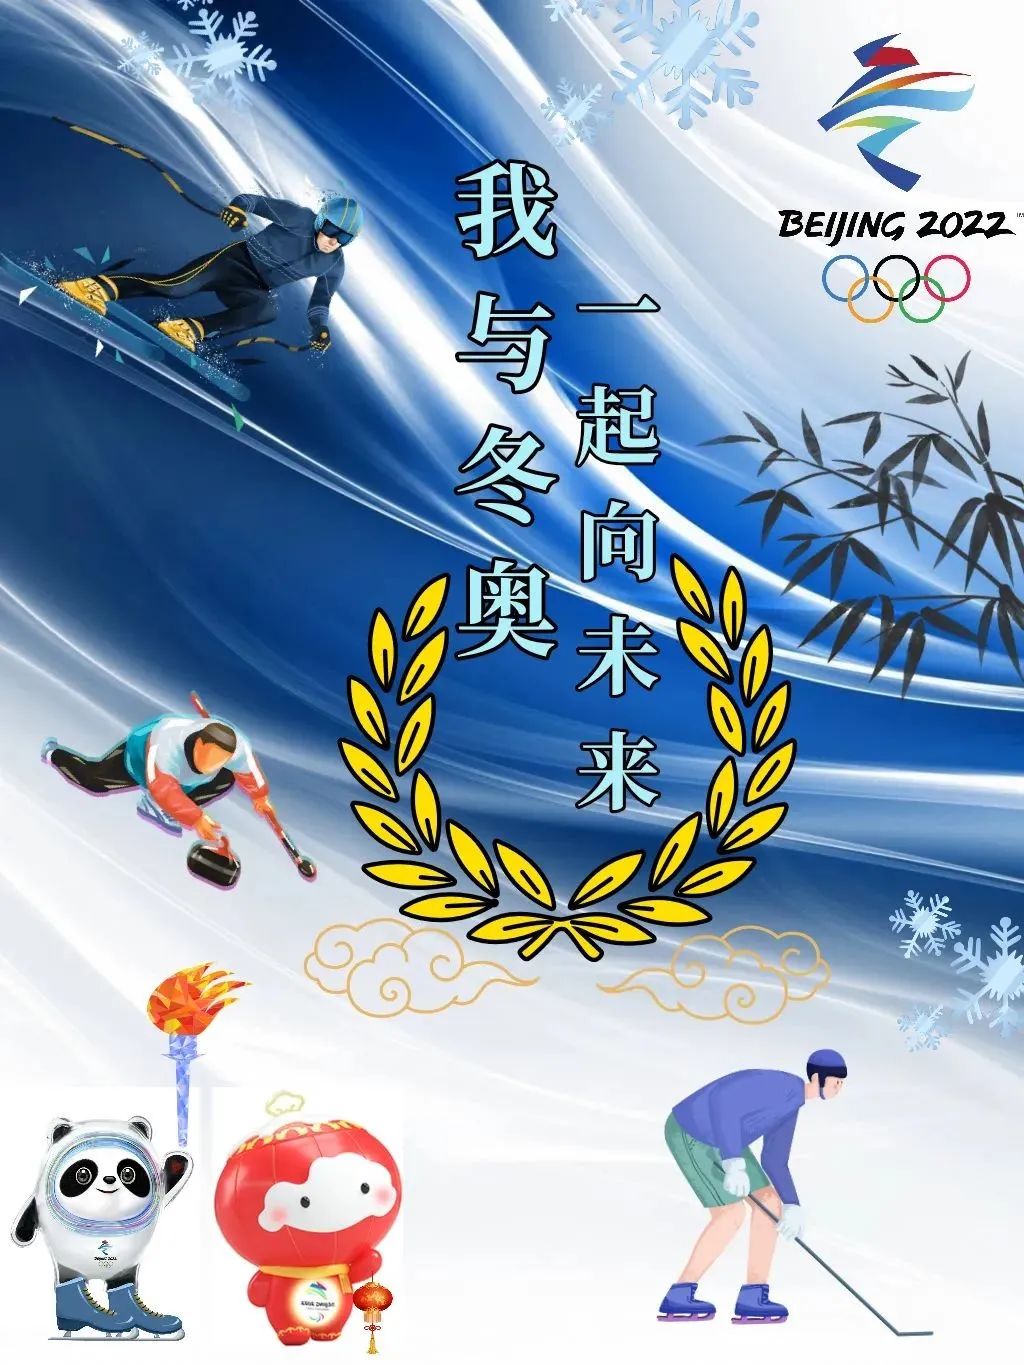 2022年北京冬奥会已拉开了序幕,上海大学国际学生通过参与我与冬奥